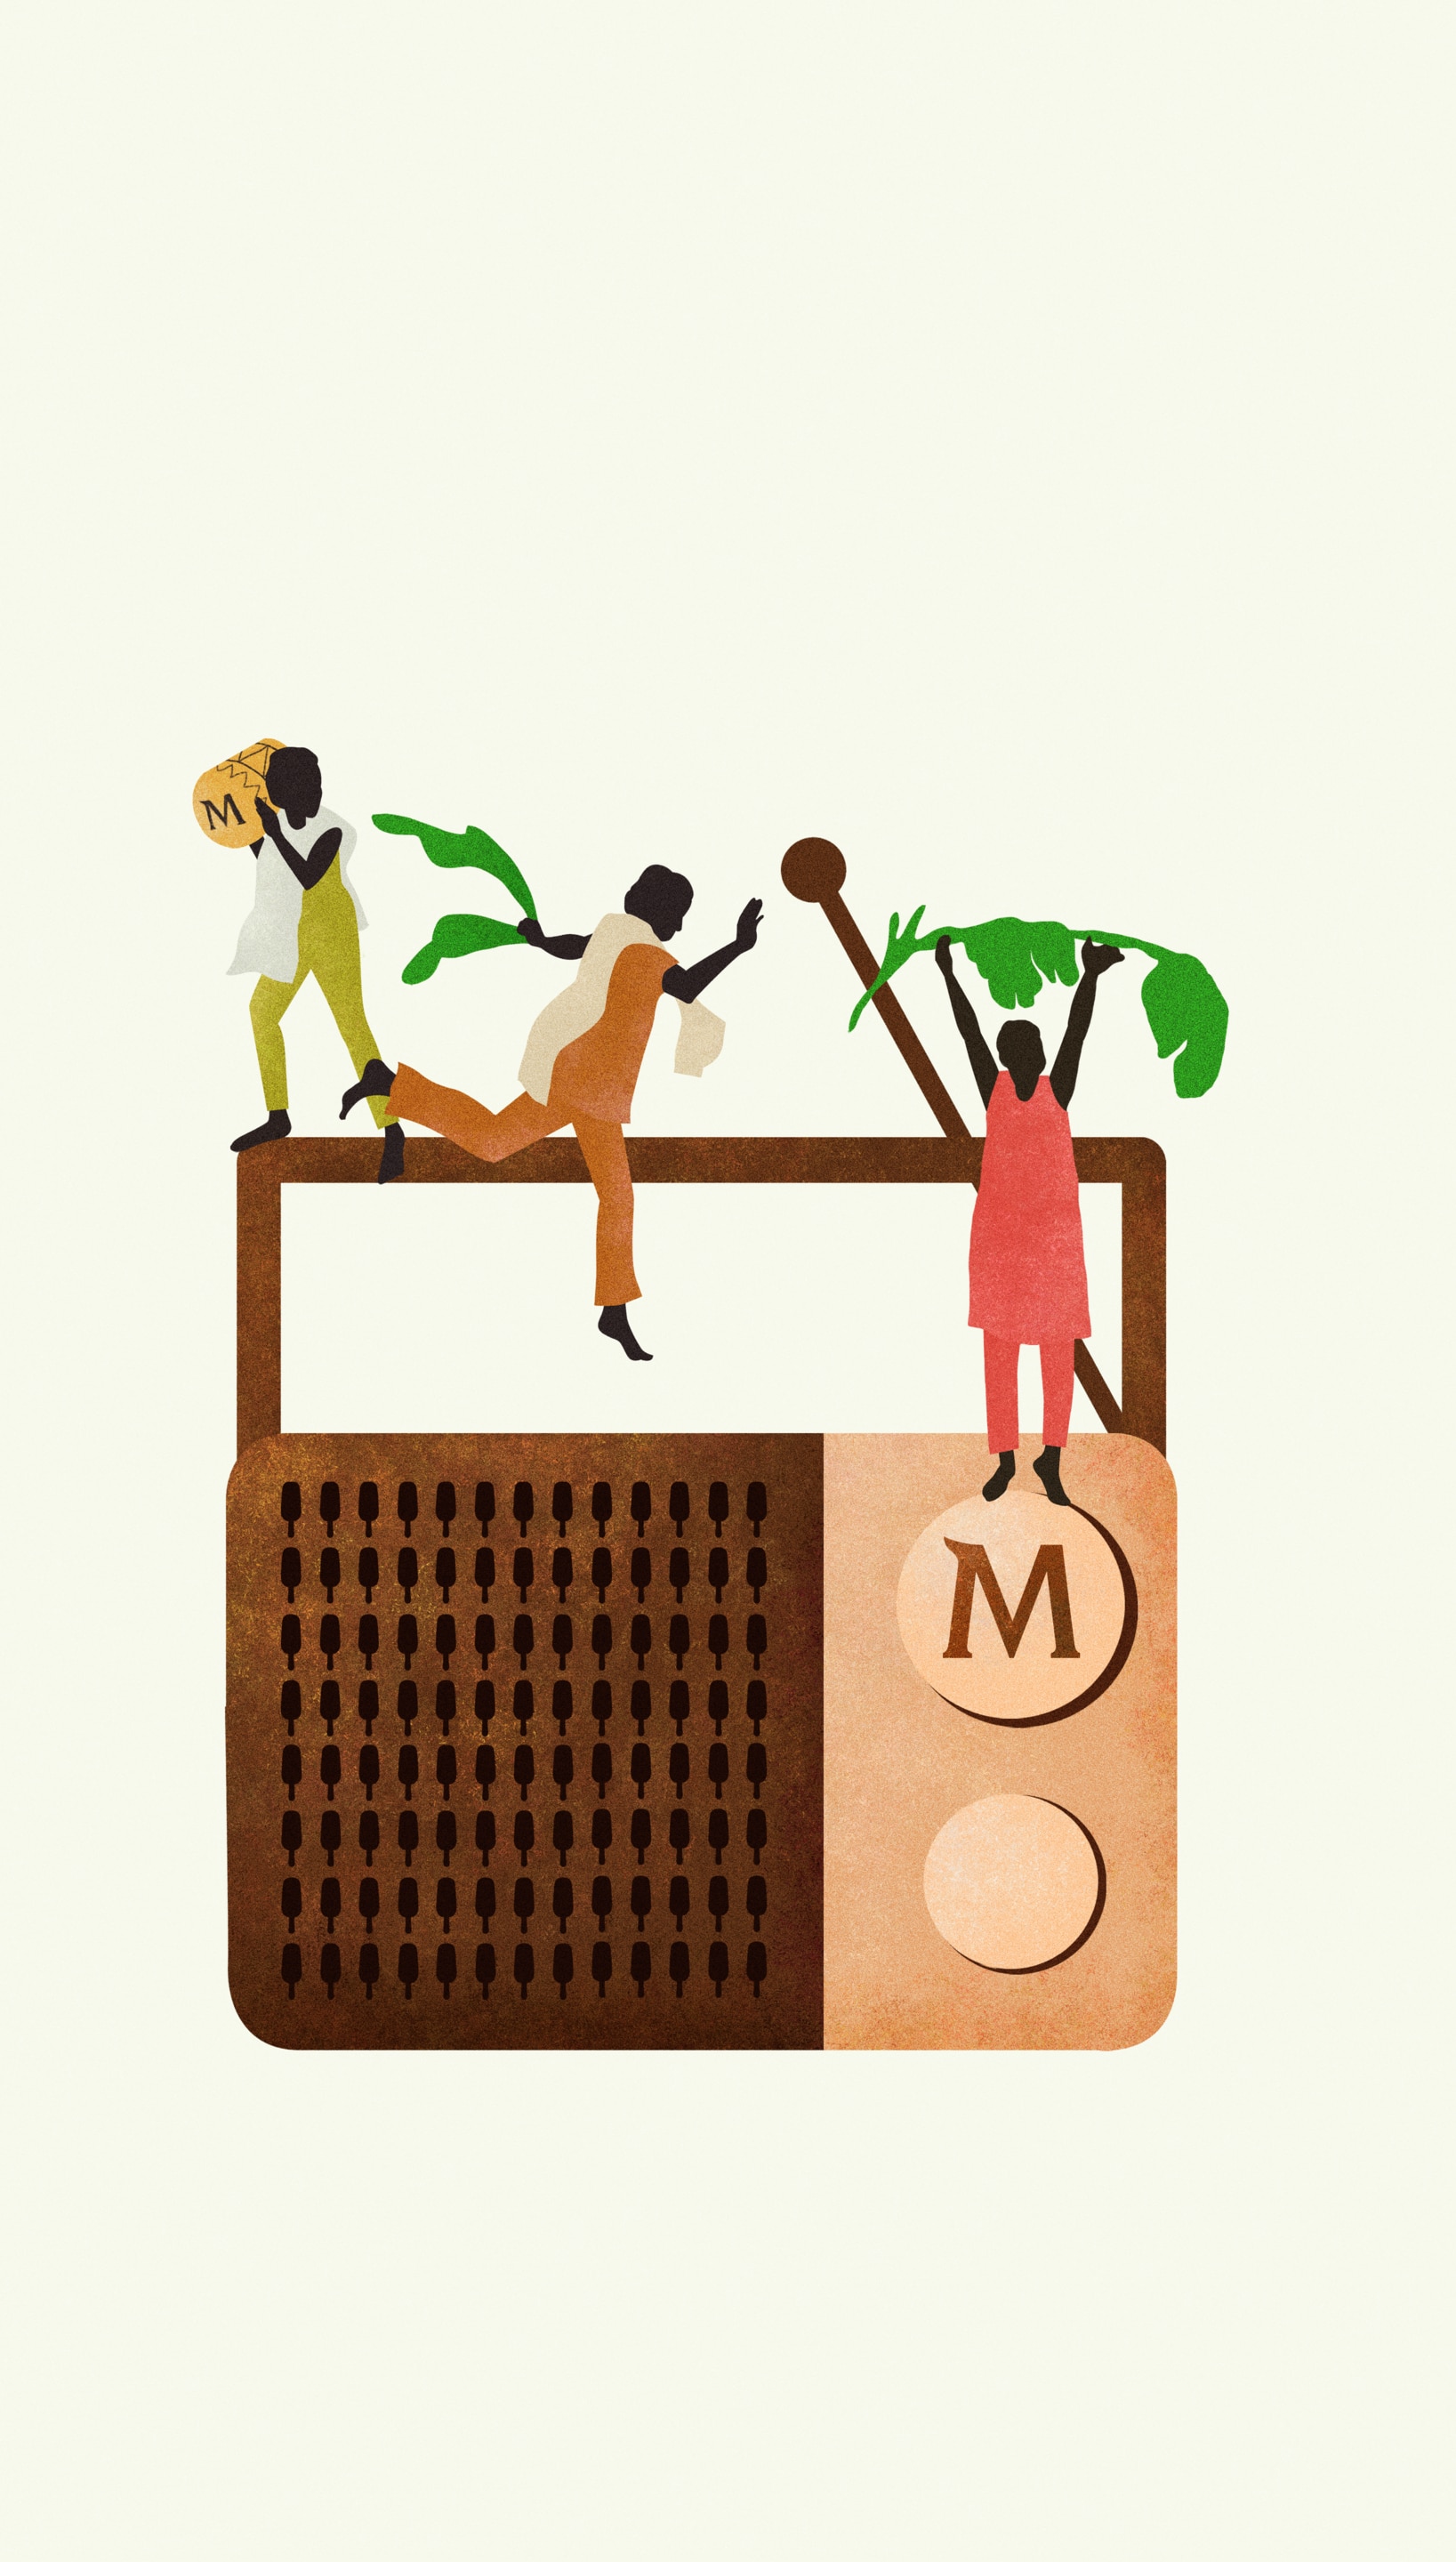 Illustration av en gammal radio märkt med Magnum-varumärket och tre personer som dansar och interagerar med stora gröna blad